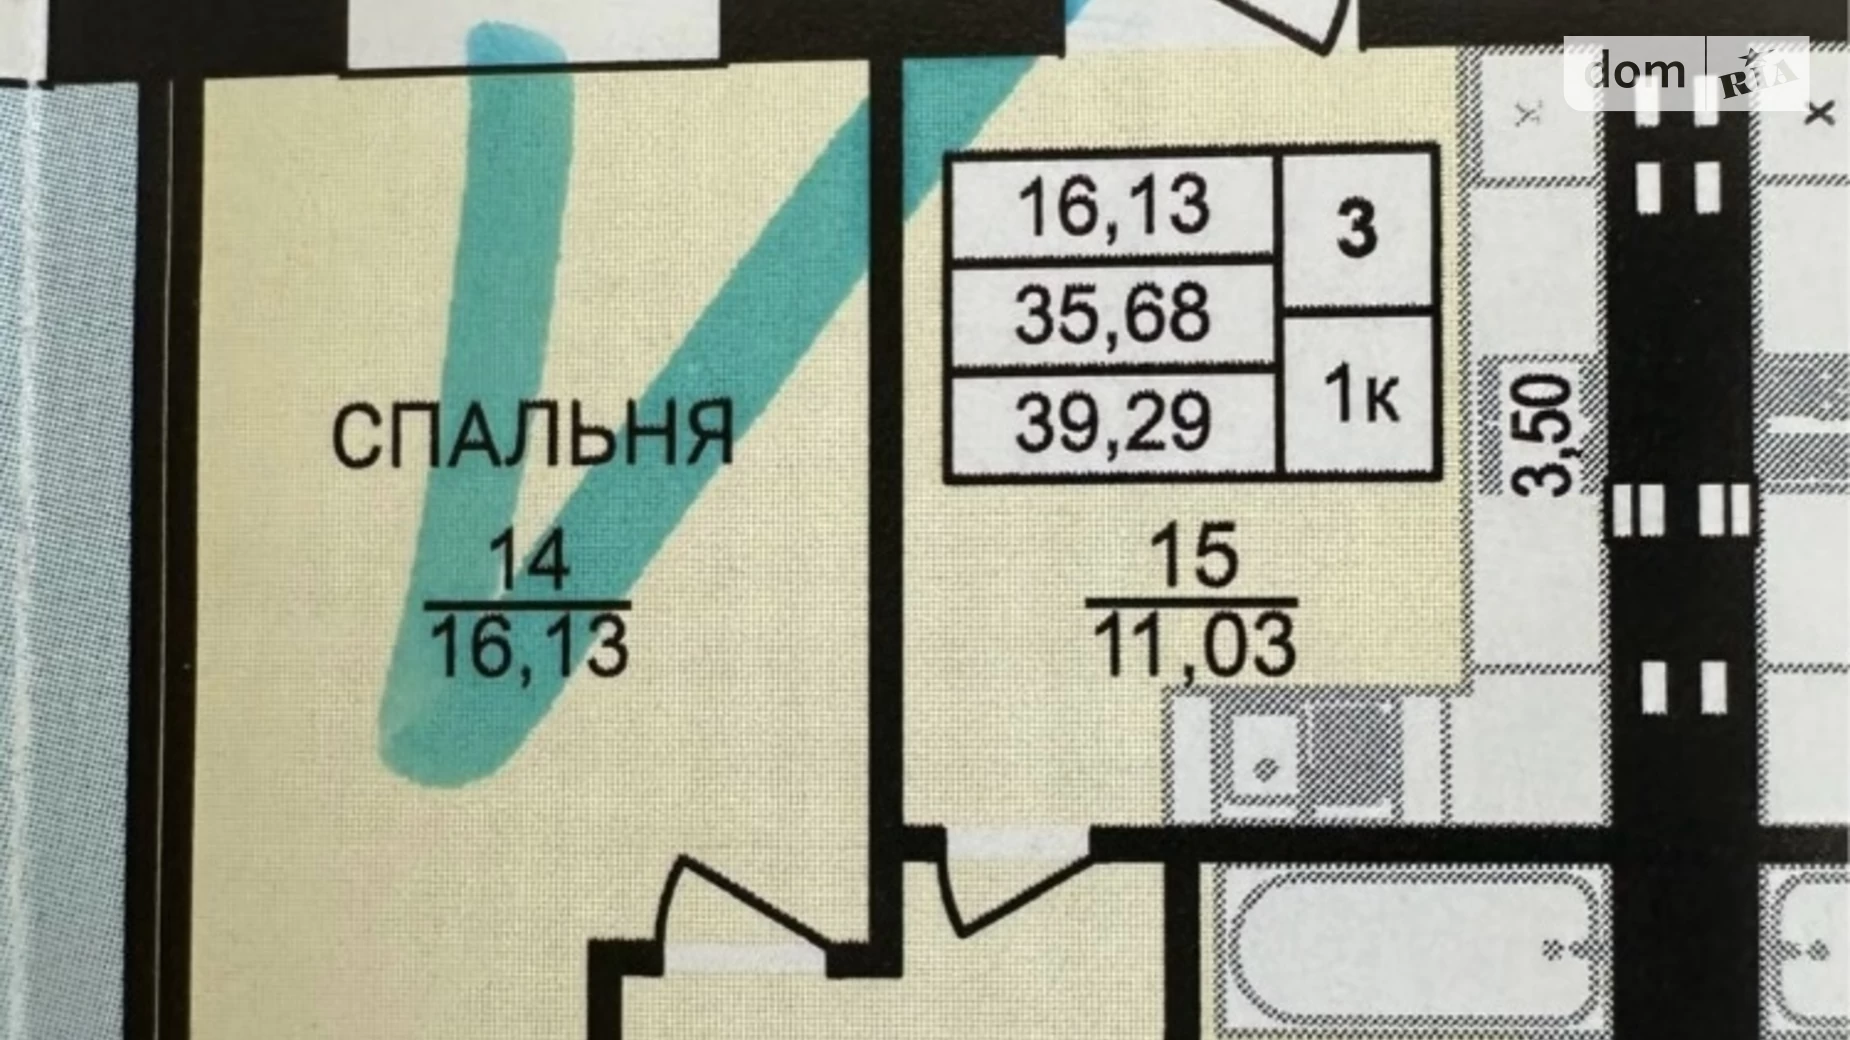 1-комнатная квартира 39.29 кв. м в Тернополе, ул. Текстильная - фото 3